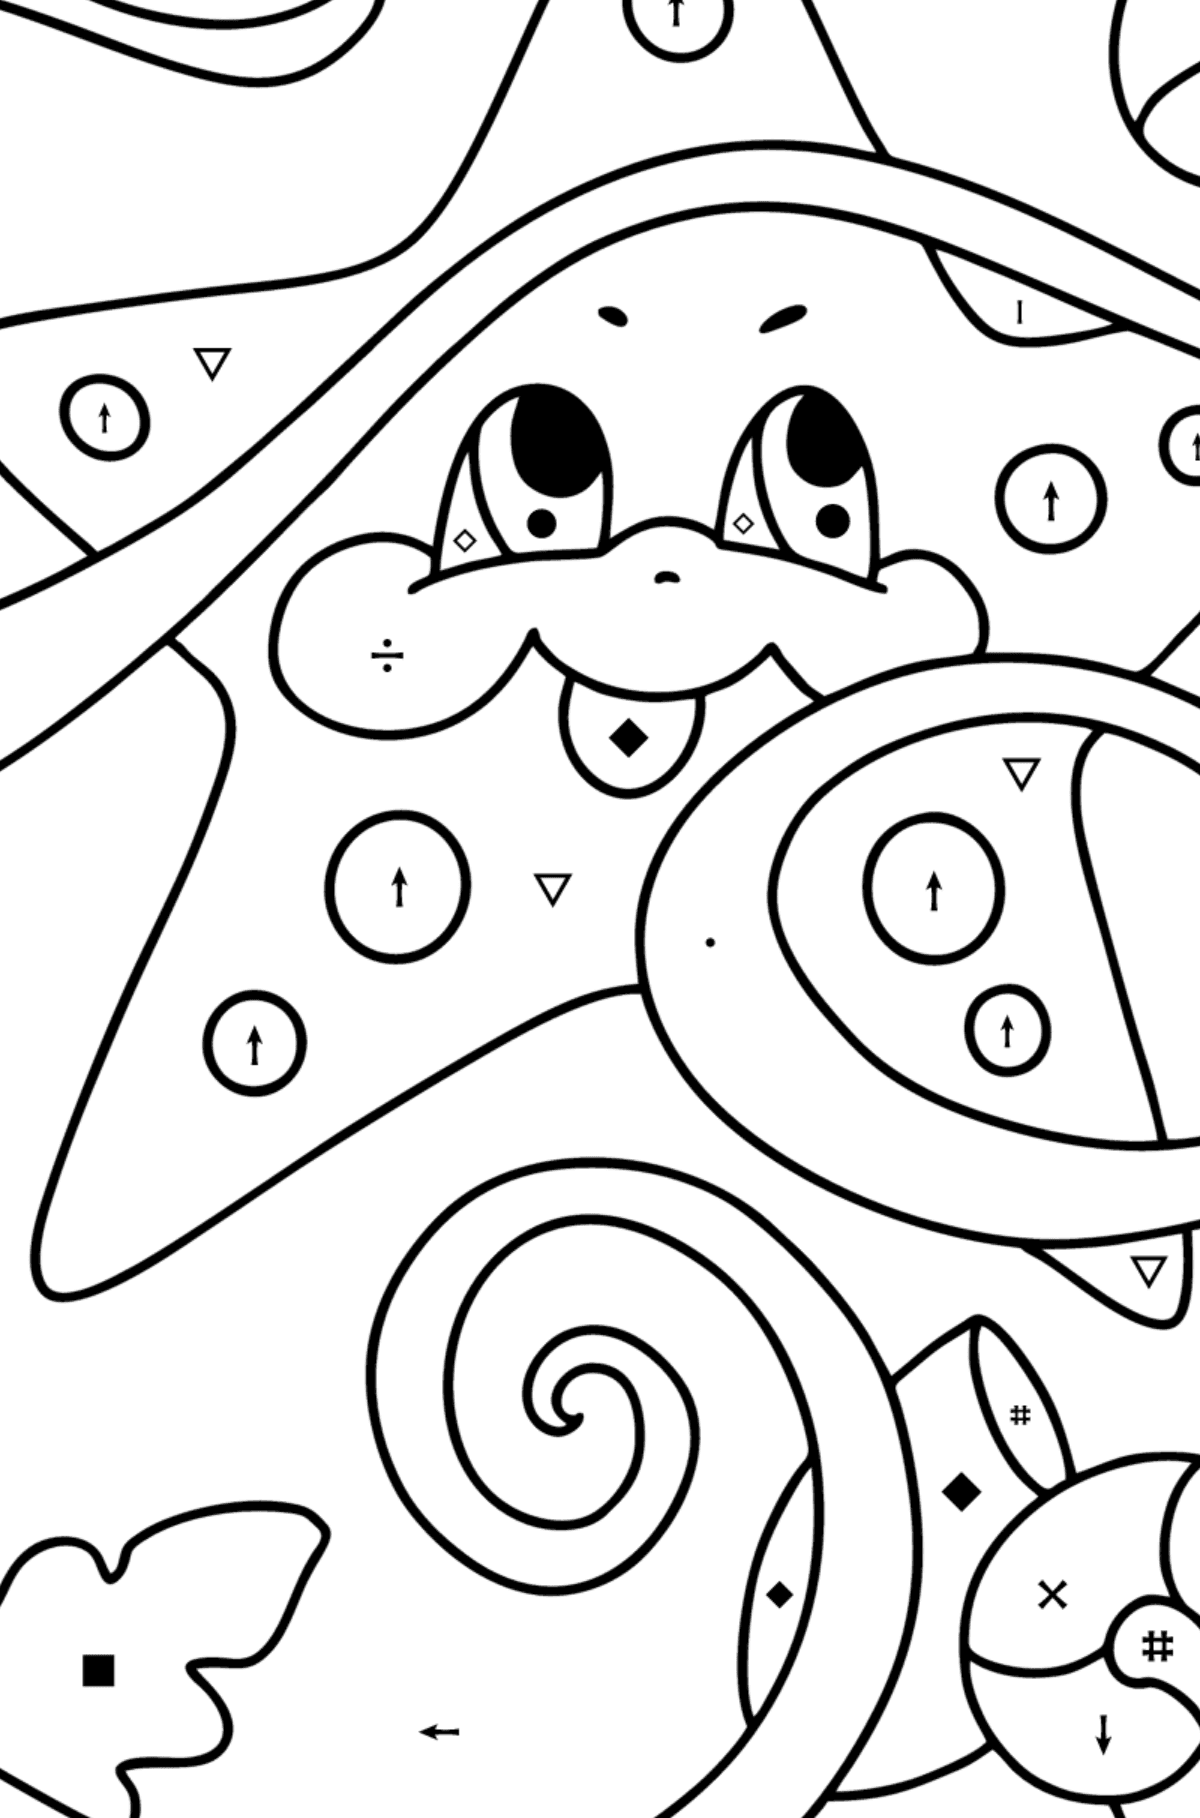 Disegno di Piccola stella marina da colorare - Colorare per simboli per bambini